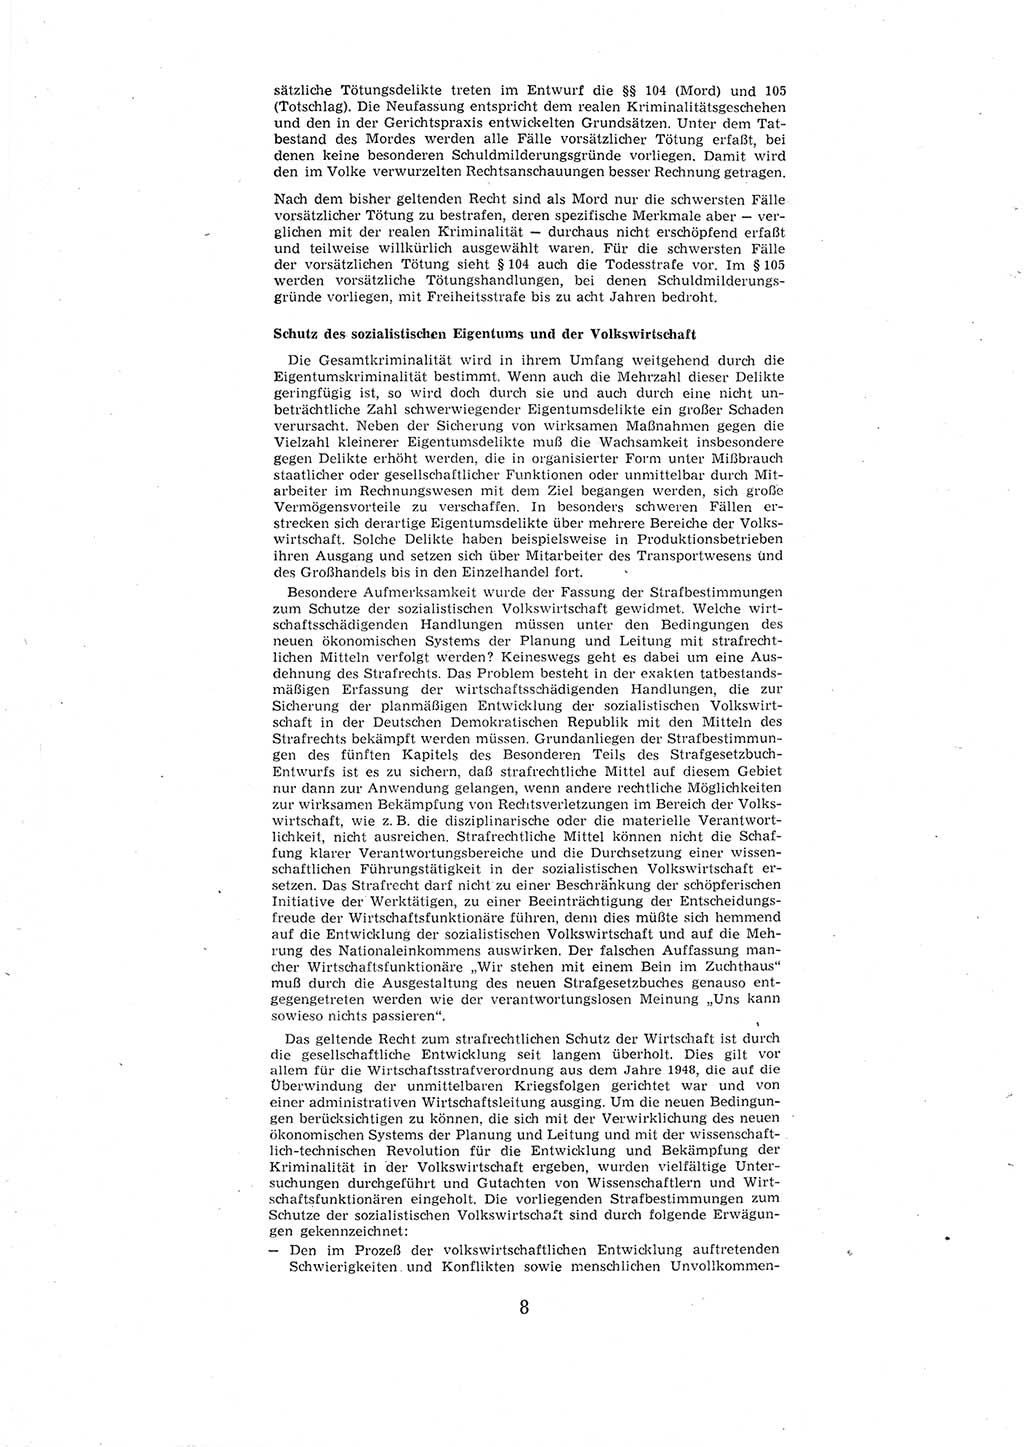 Entwurf des Strafgesetzbuches (StGB) der Deutschen Demokratischen Republik (DDR) 1967, Seite 8 (Entw. StGB DDR 1967, S. 8)